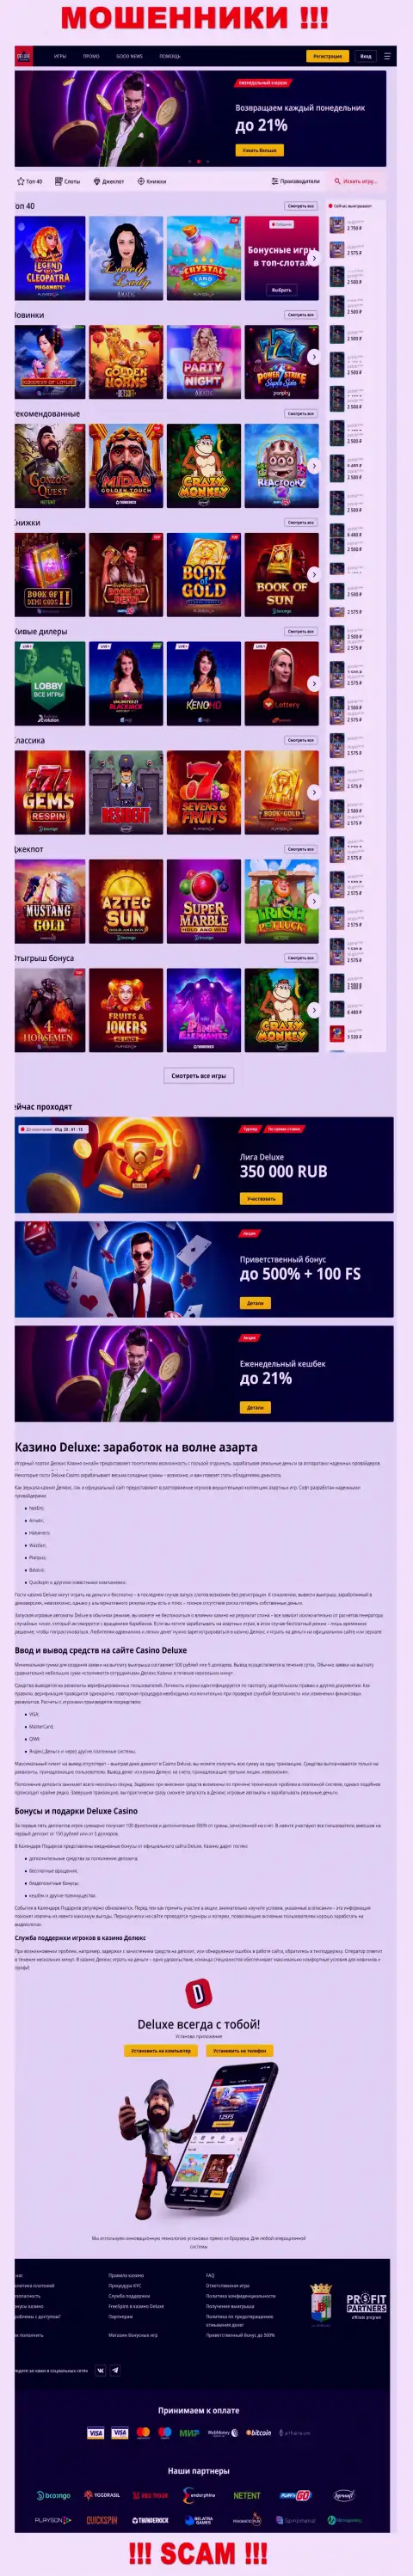 Официальная интернет конторы Делюкс-Казино Ком